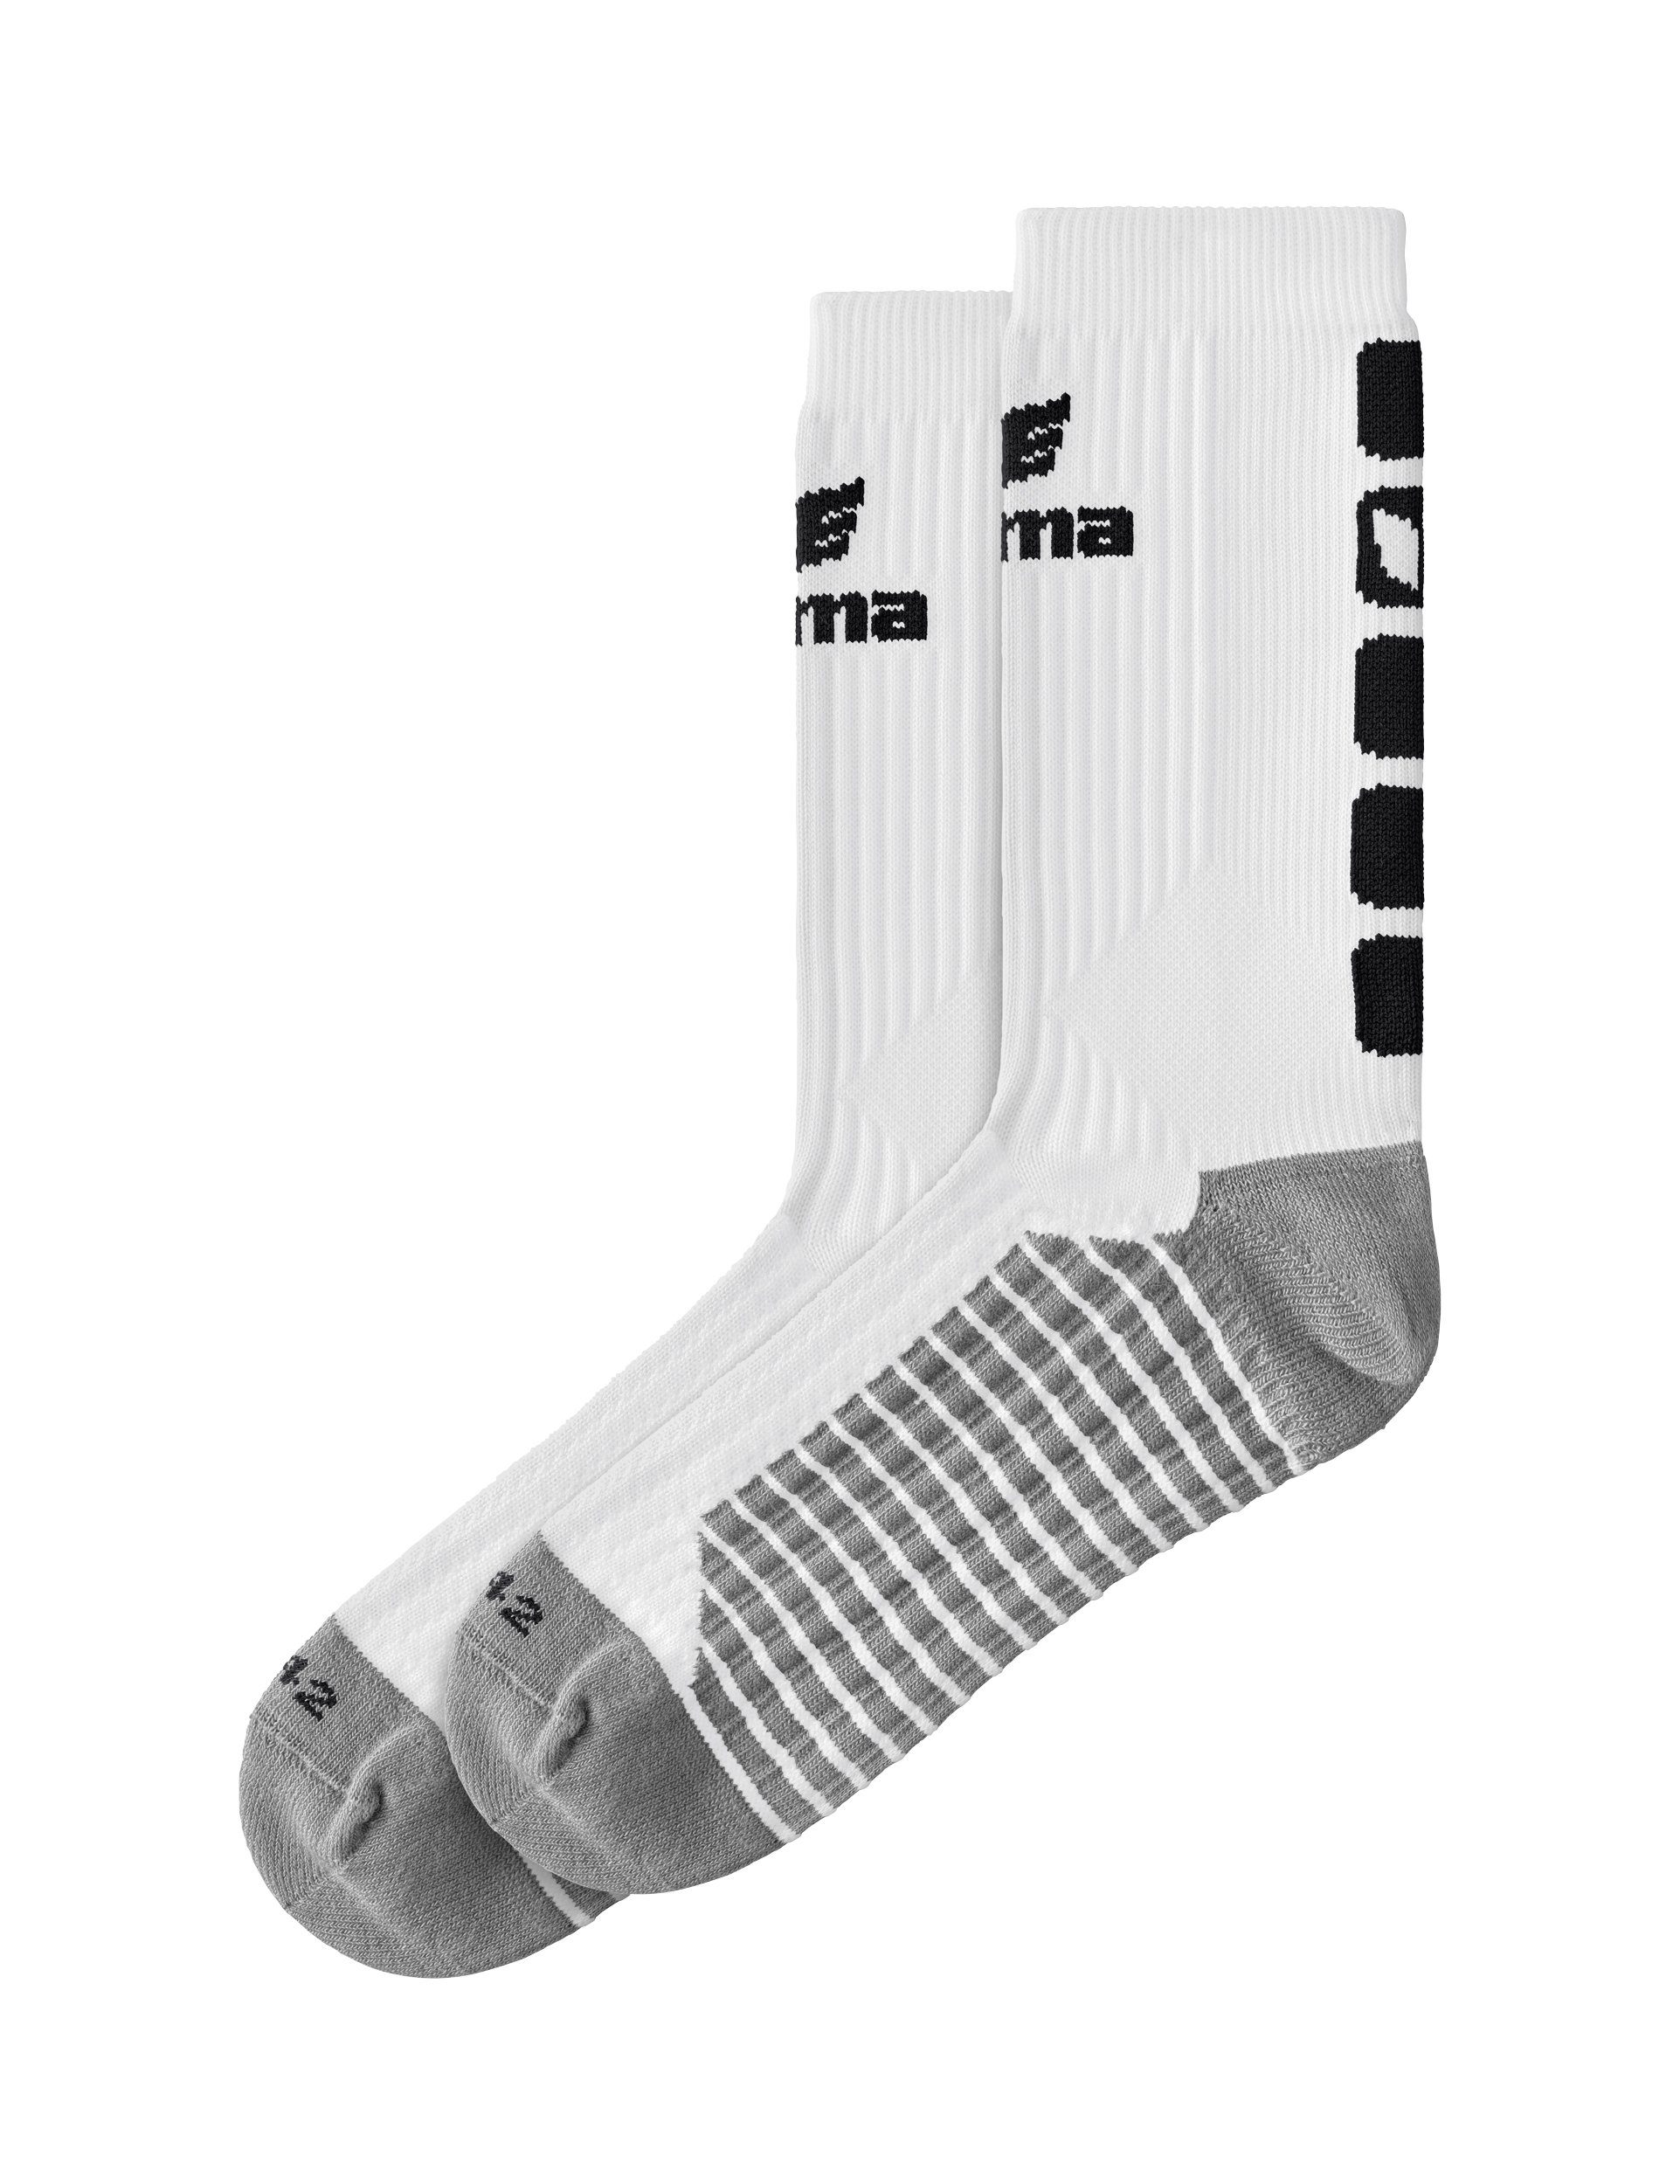 5-C Erima Sportsocken socks white/black